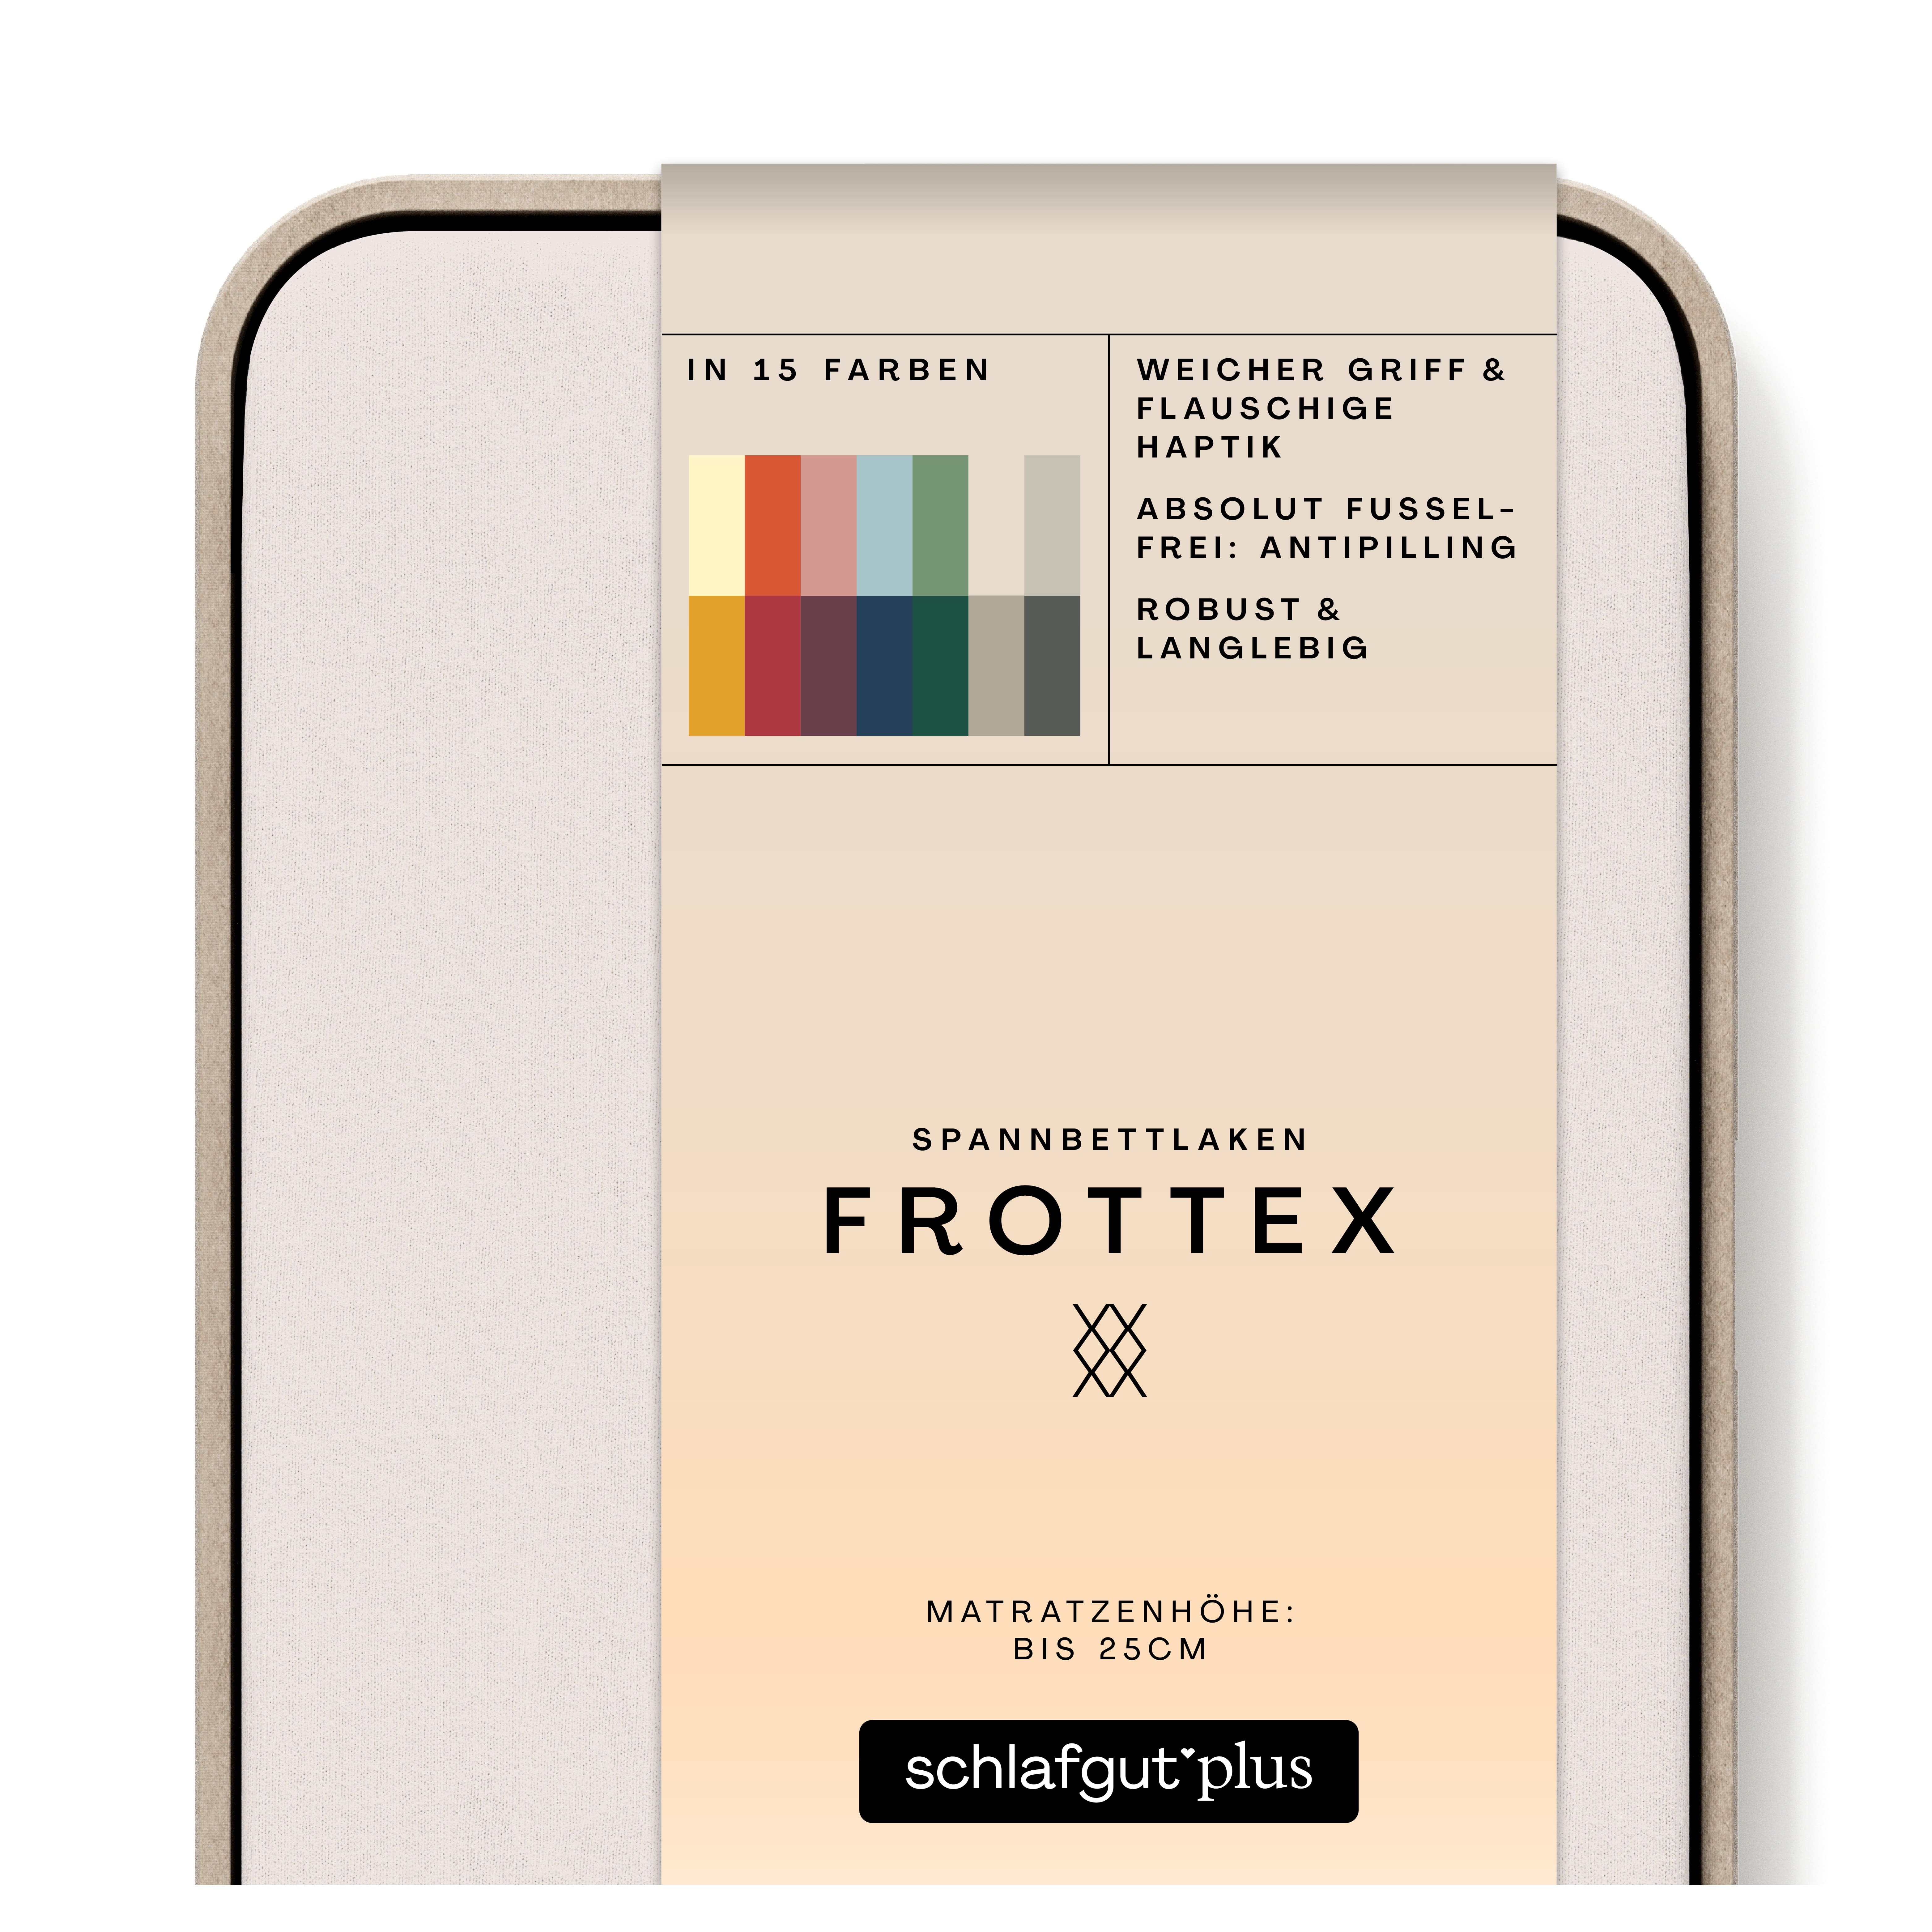 Das Produktbild vom Spannbettlaken der Reihe Frottex in Farbe sand light von Schlafgut